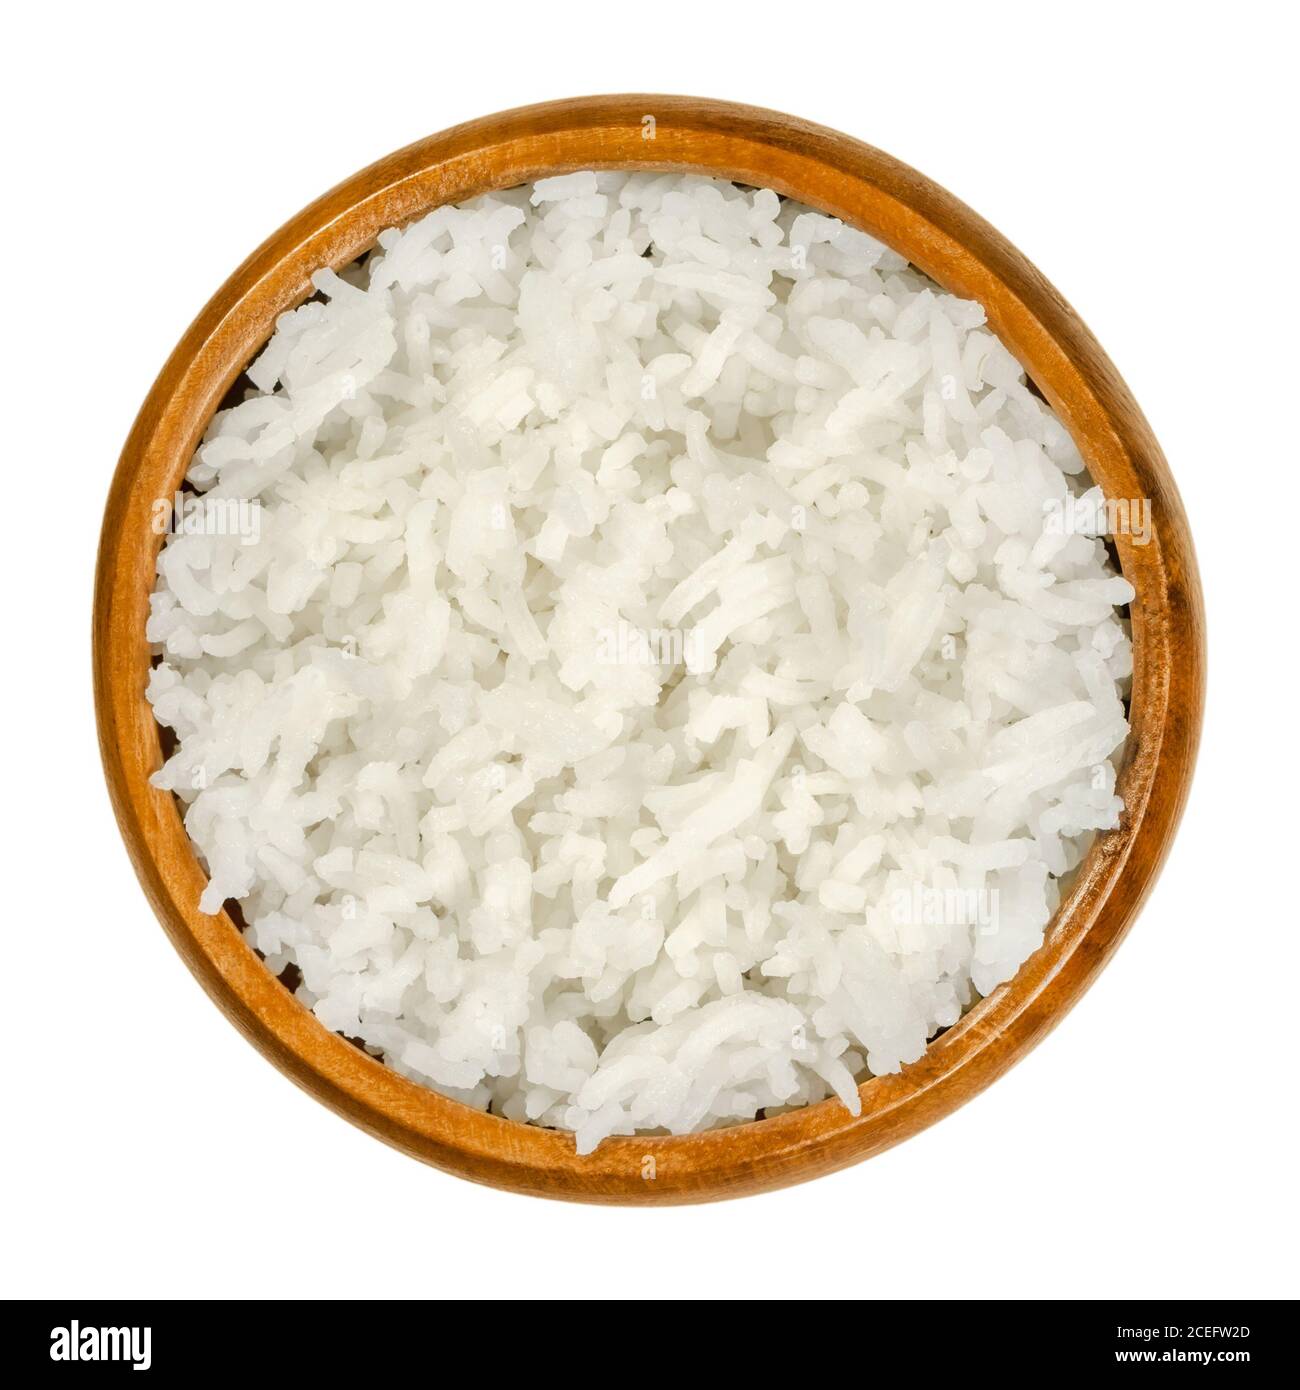 Riz basmati blanc cuit dans un bol en bois. Variété de riz avec de longs grains minces et une odeur et un goût aromatiques, du sous-continent indien. Banque D'Images